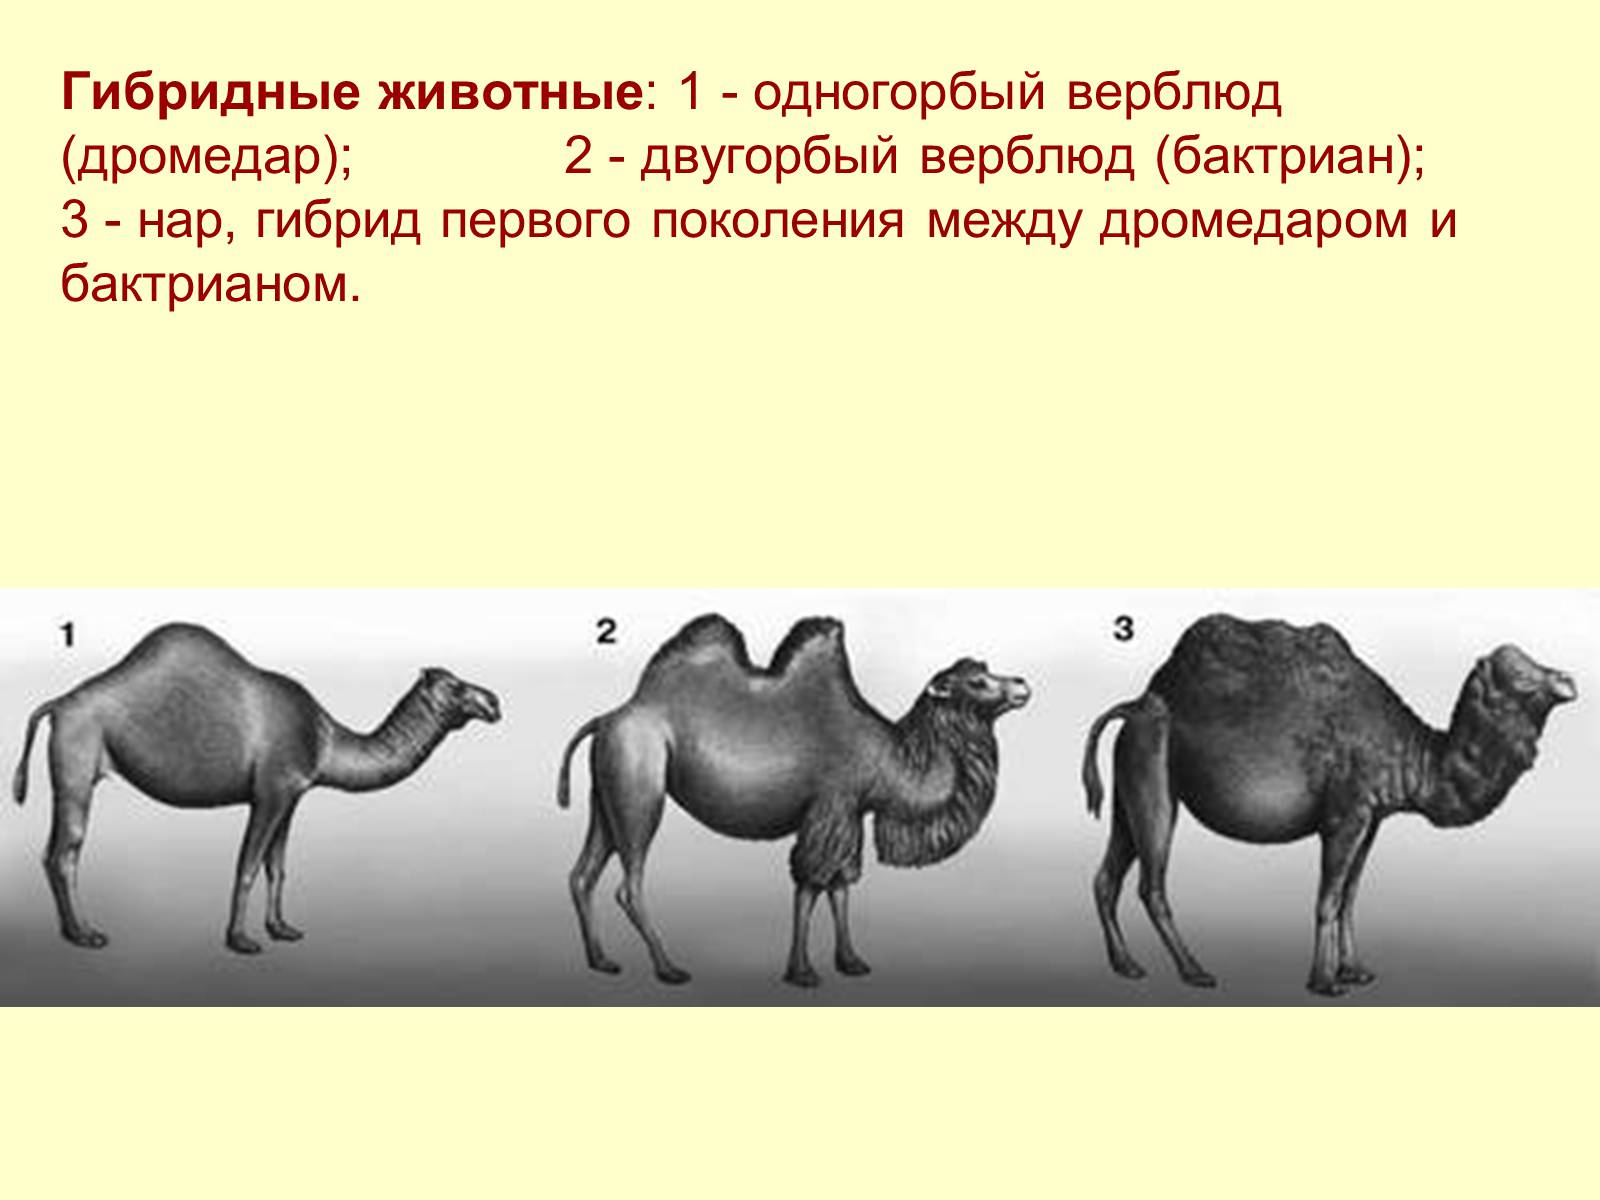 Гибриды сравнение. Двугорбый верблюд бактриан Родина. Селекция двугорбый верблюд. Верблюд двугорбый Туркменистан. Нар одногорбый верблюд.